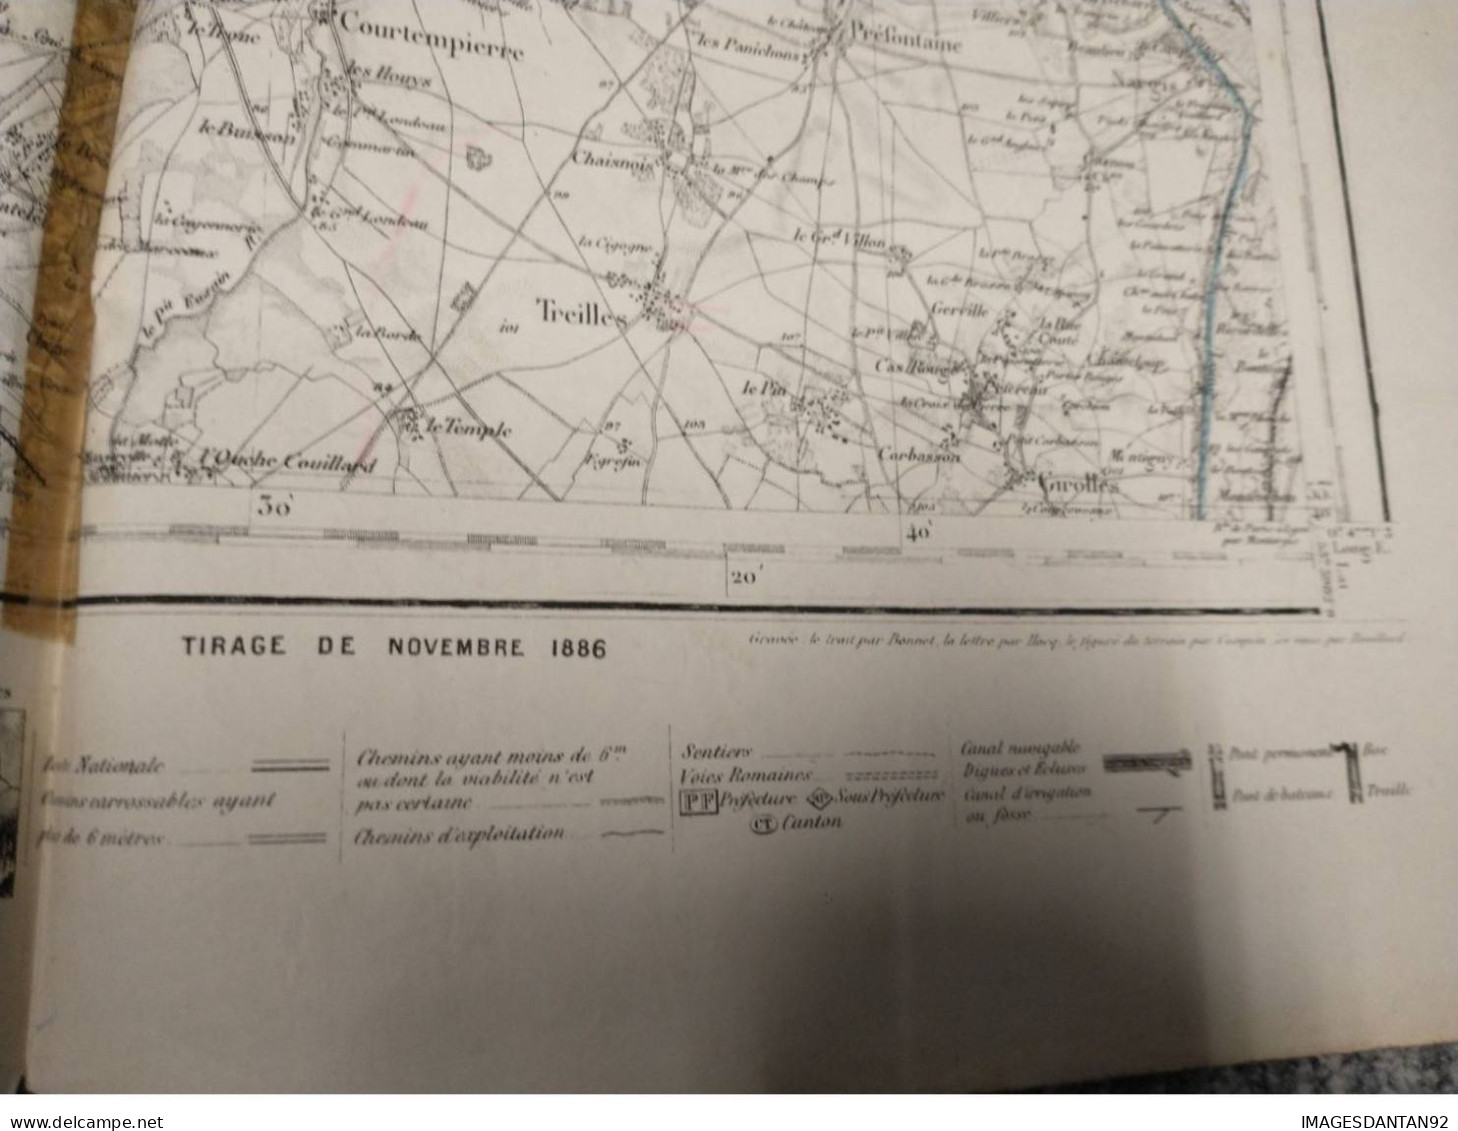 77 FONTAINEBLEAU GRAND PLAN DE 1886 LEVEE PAR OFFICIERS CORPS D ETAT MAJOR DE 1839  CACHET STEAM YACHT DAUPHIN CAPITAINE - Cartes Topographiques